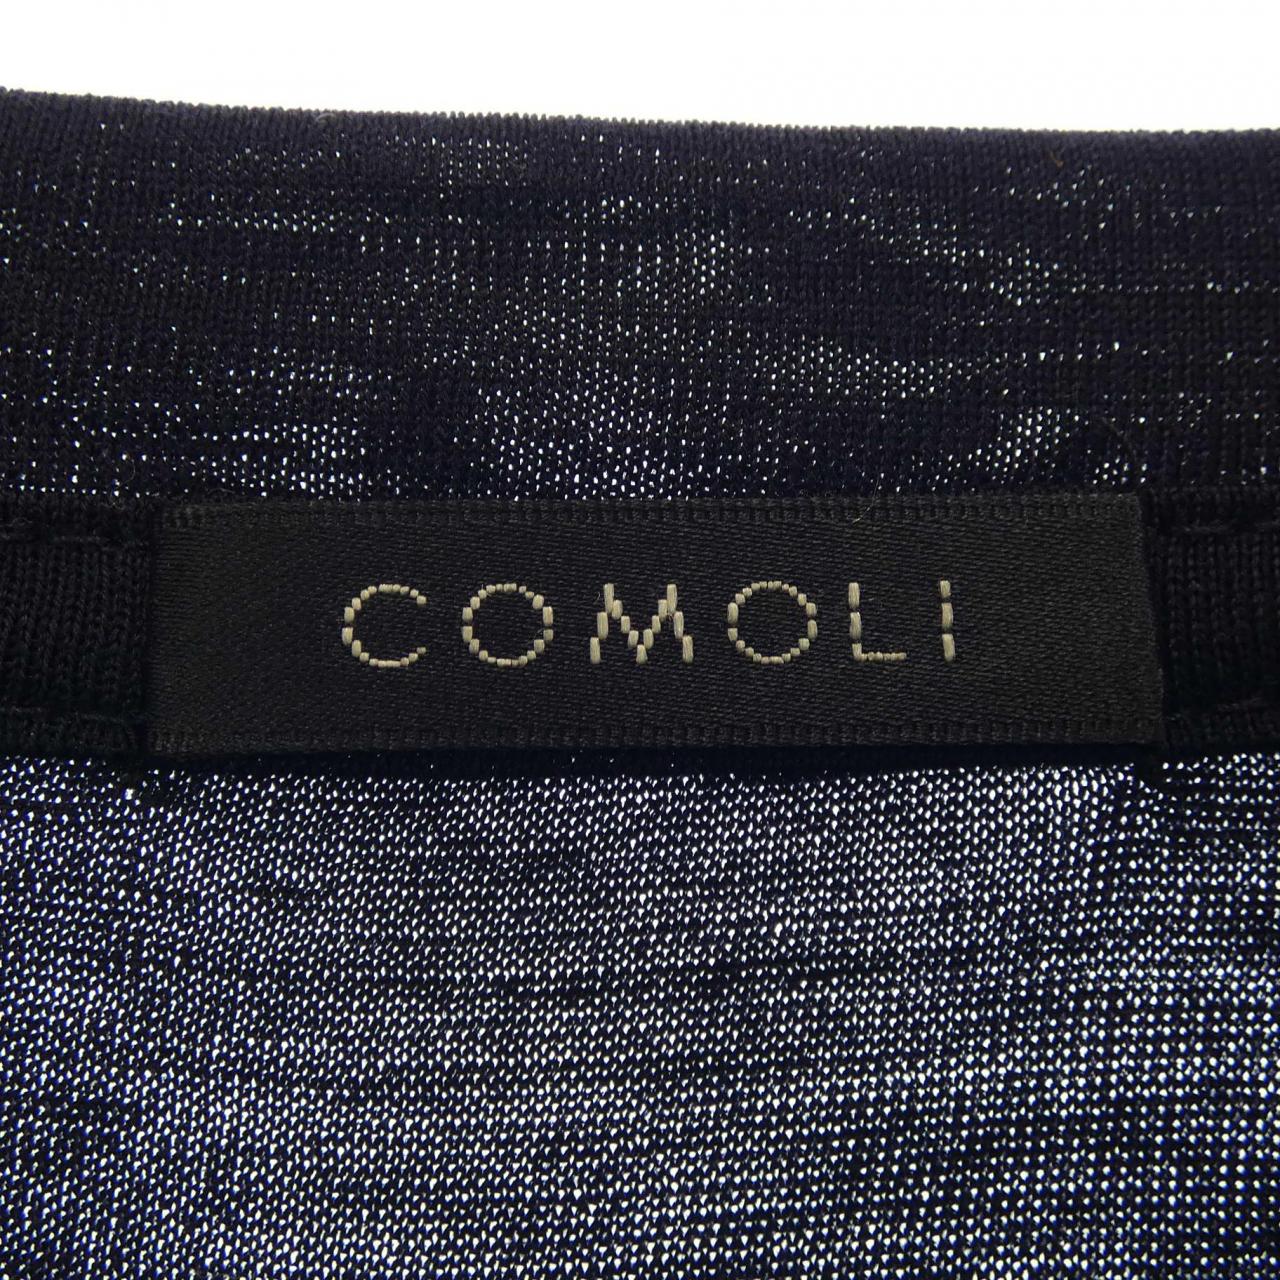 COMOLI COMOLI T恤